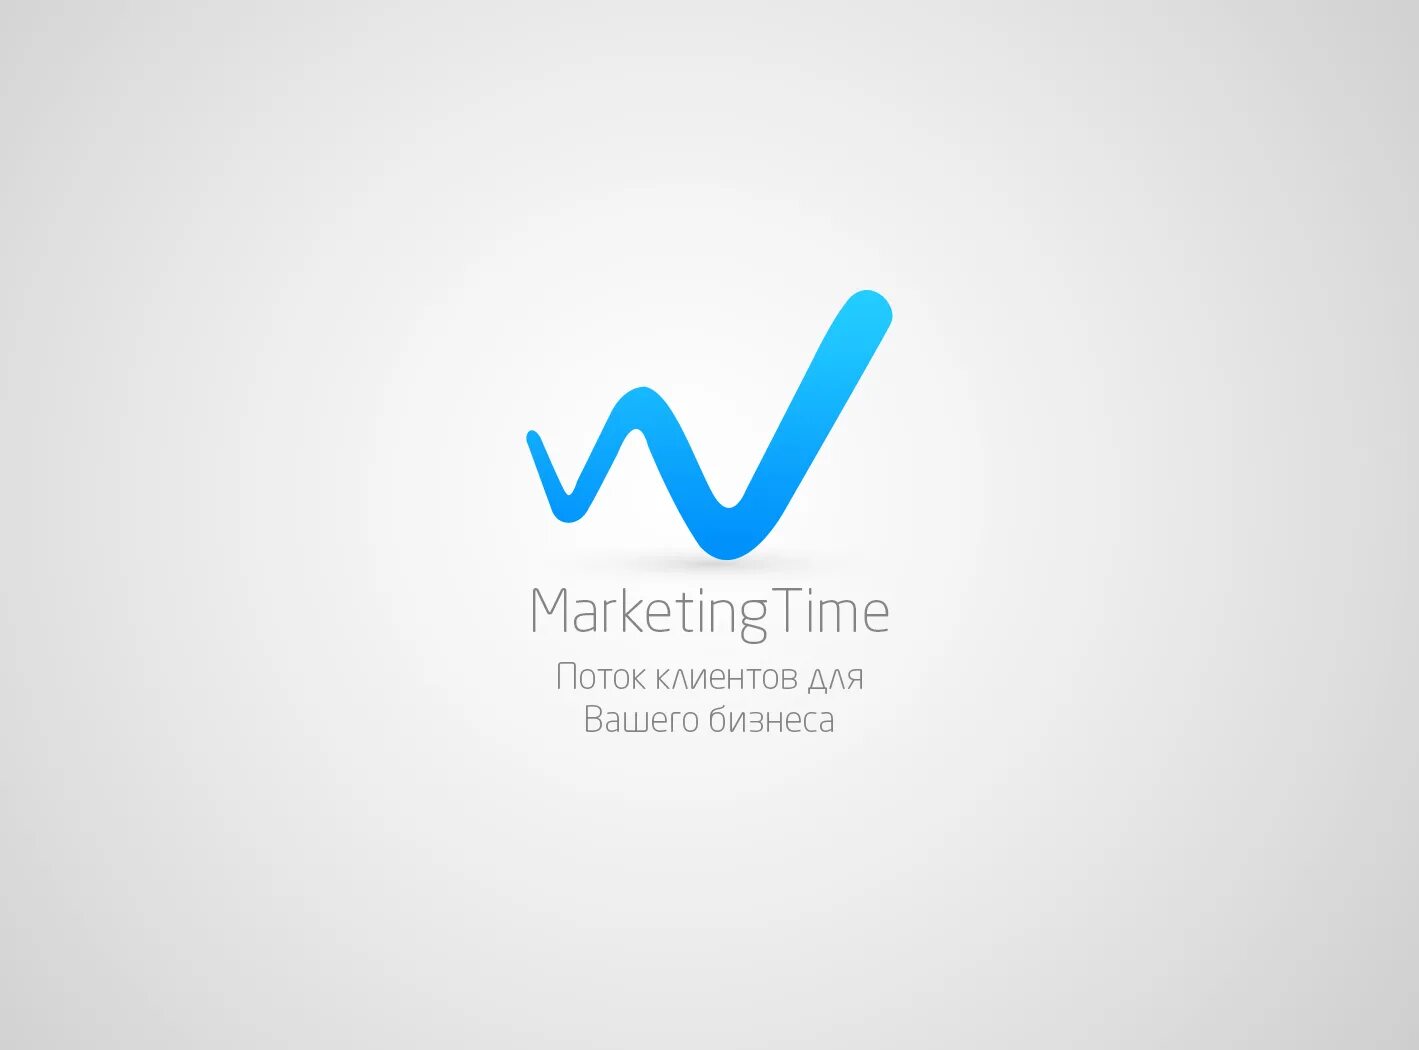 Маркет время. Маркетинг логотип. Time marketing франшиза. Эмблема маркетолога. Логотип интернет агентства.